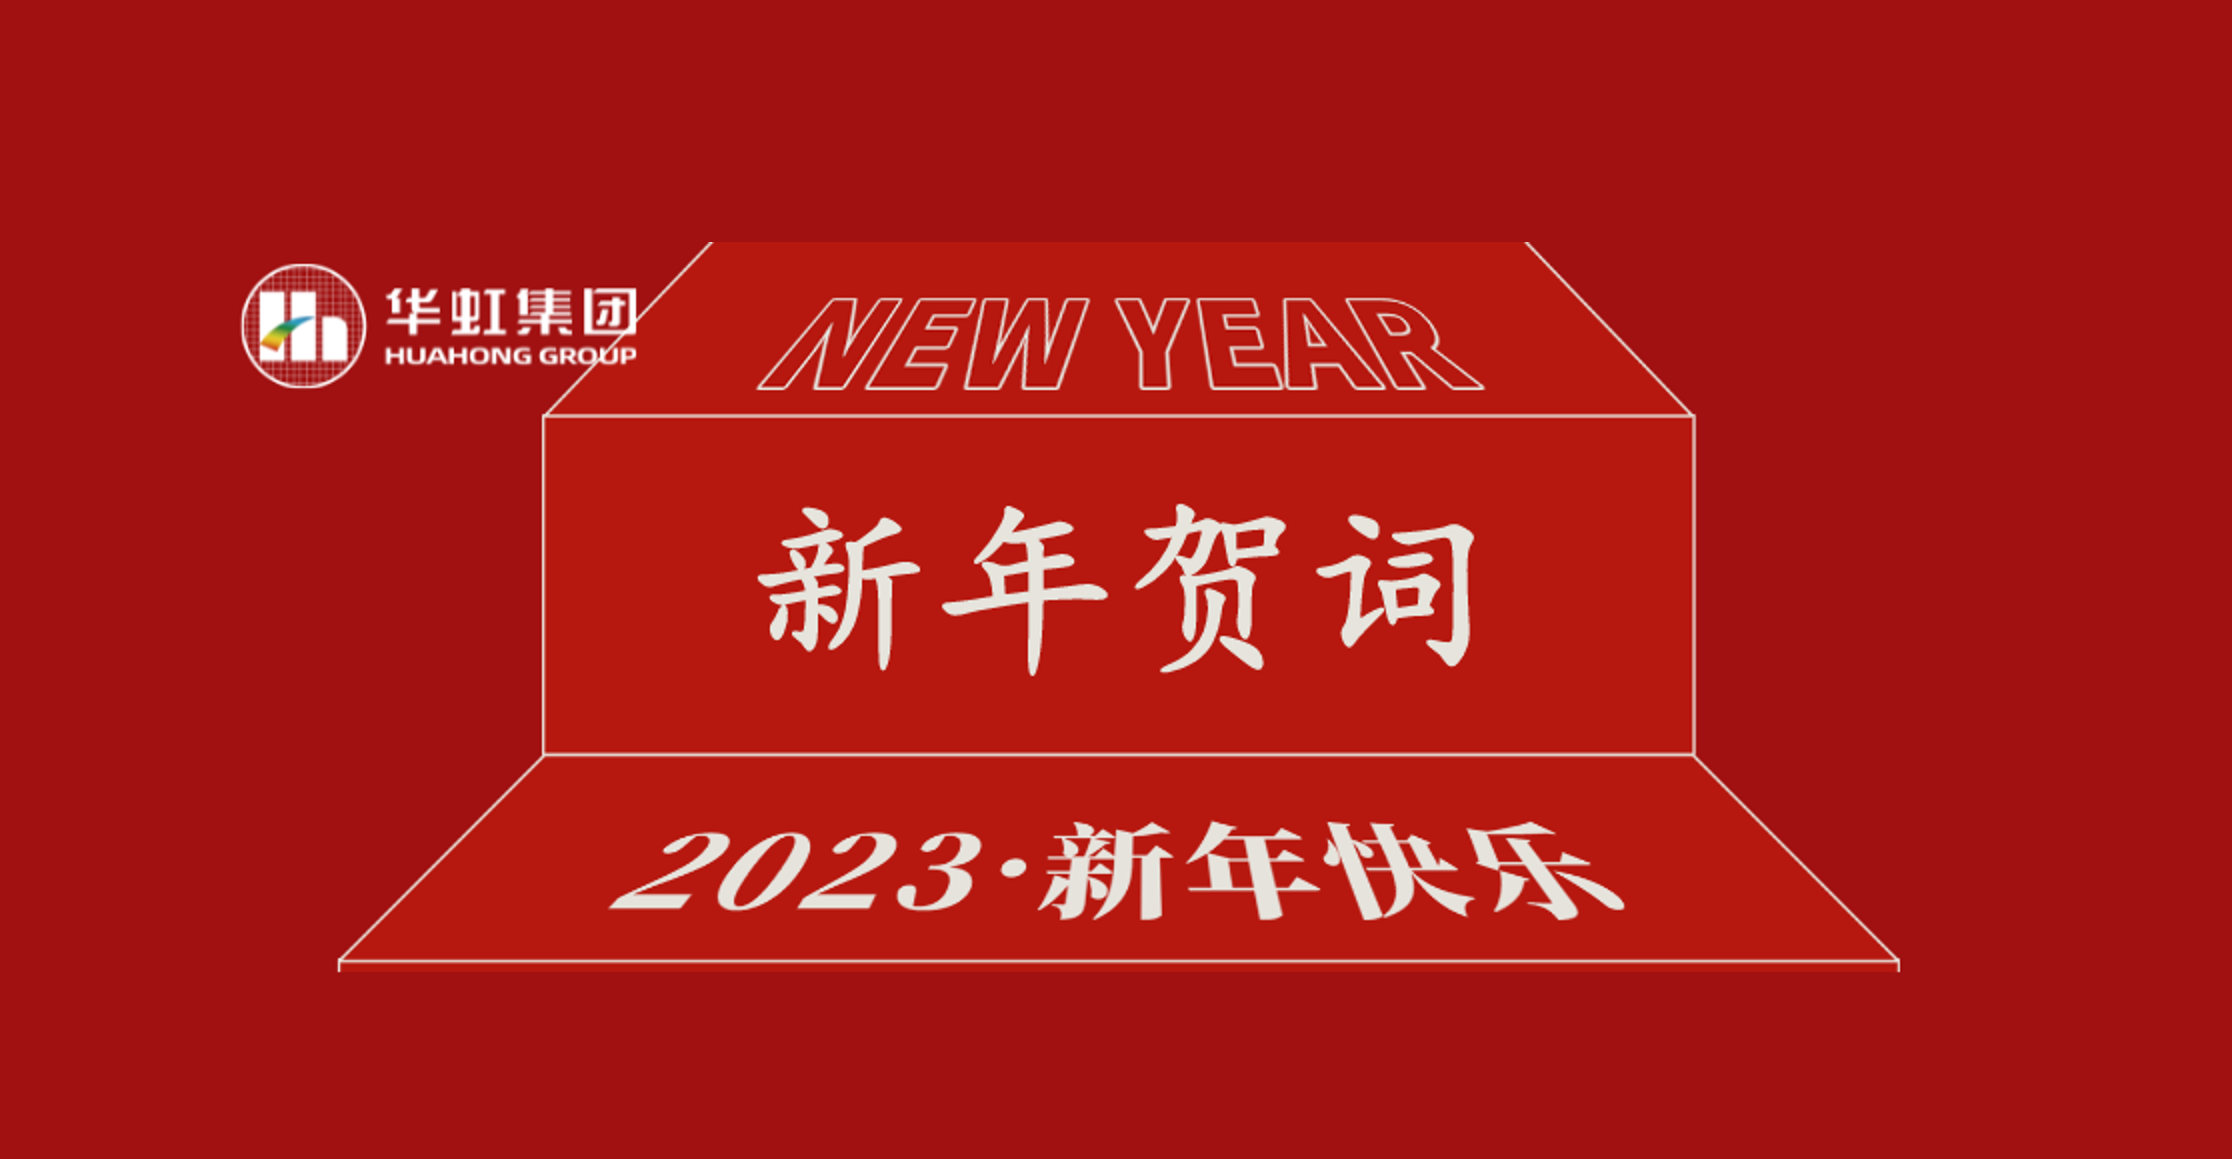 沙巴在线(中国)有限公司官网党委书记、董事长张素心2023年新年贺词